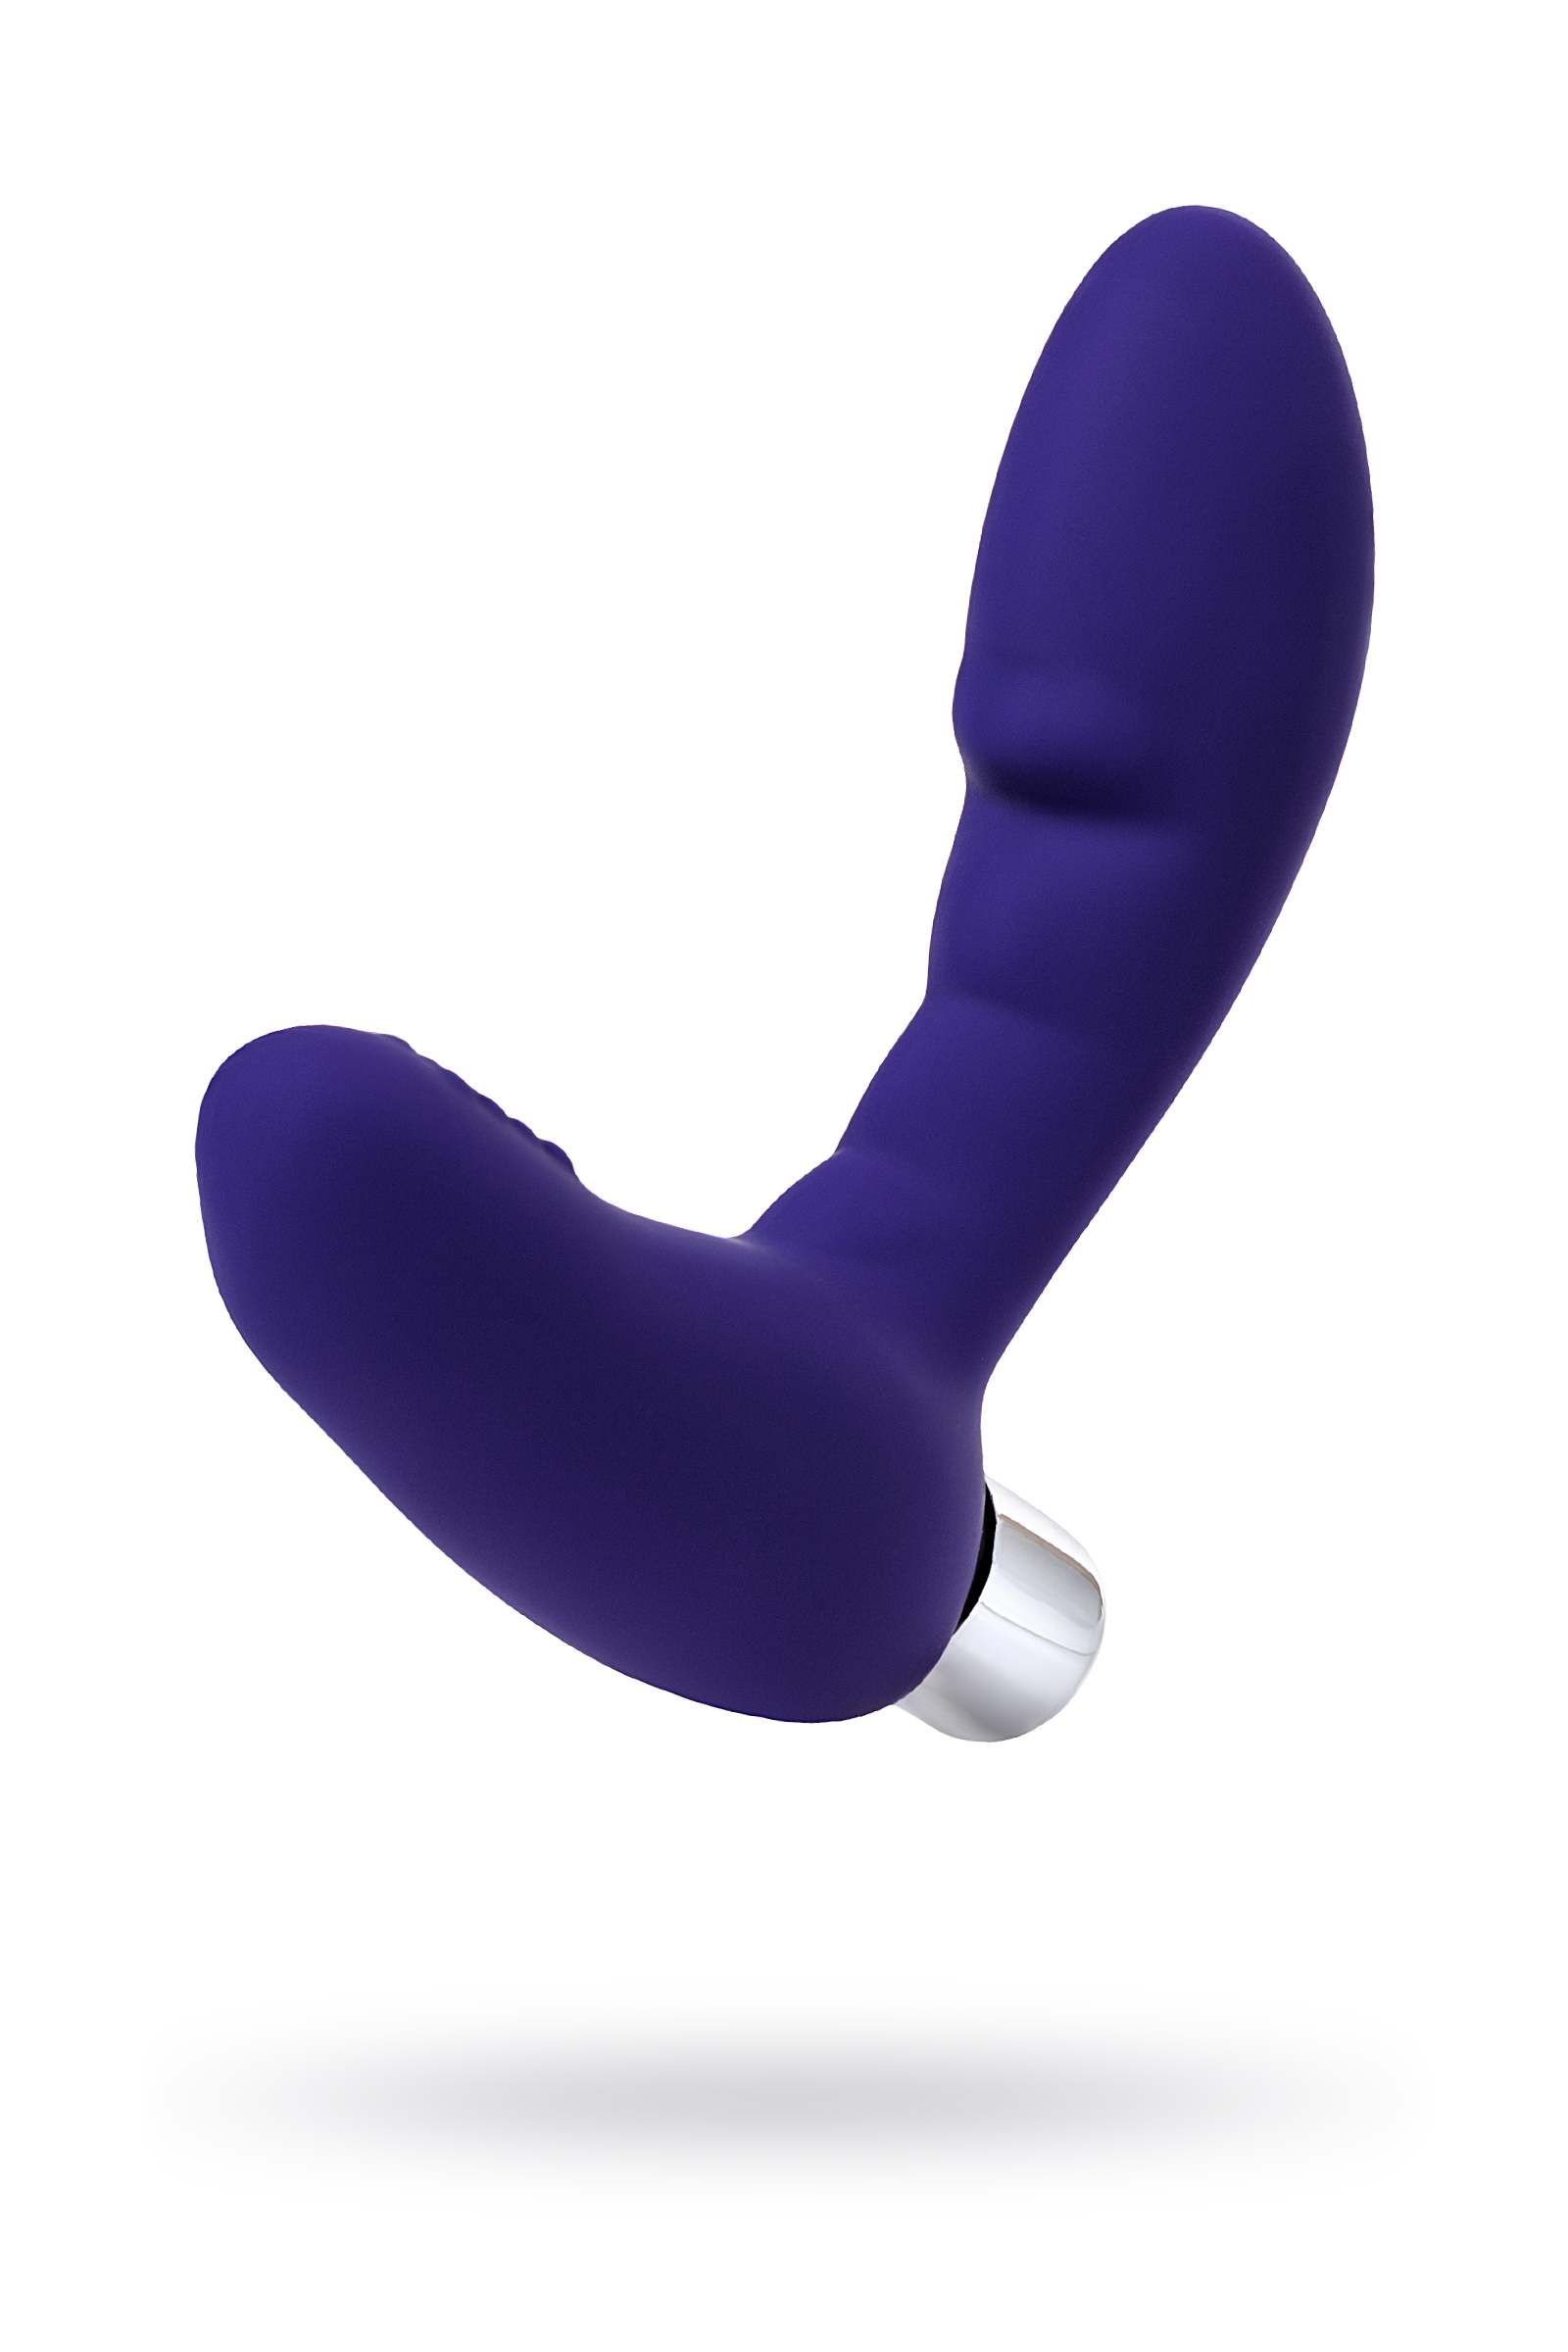 ToDo Bruman prostat stimülatörü, silikon, mor, 12 cm